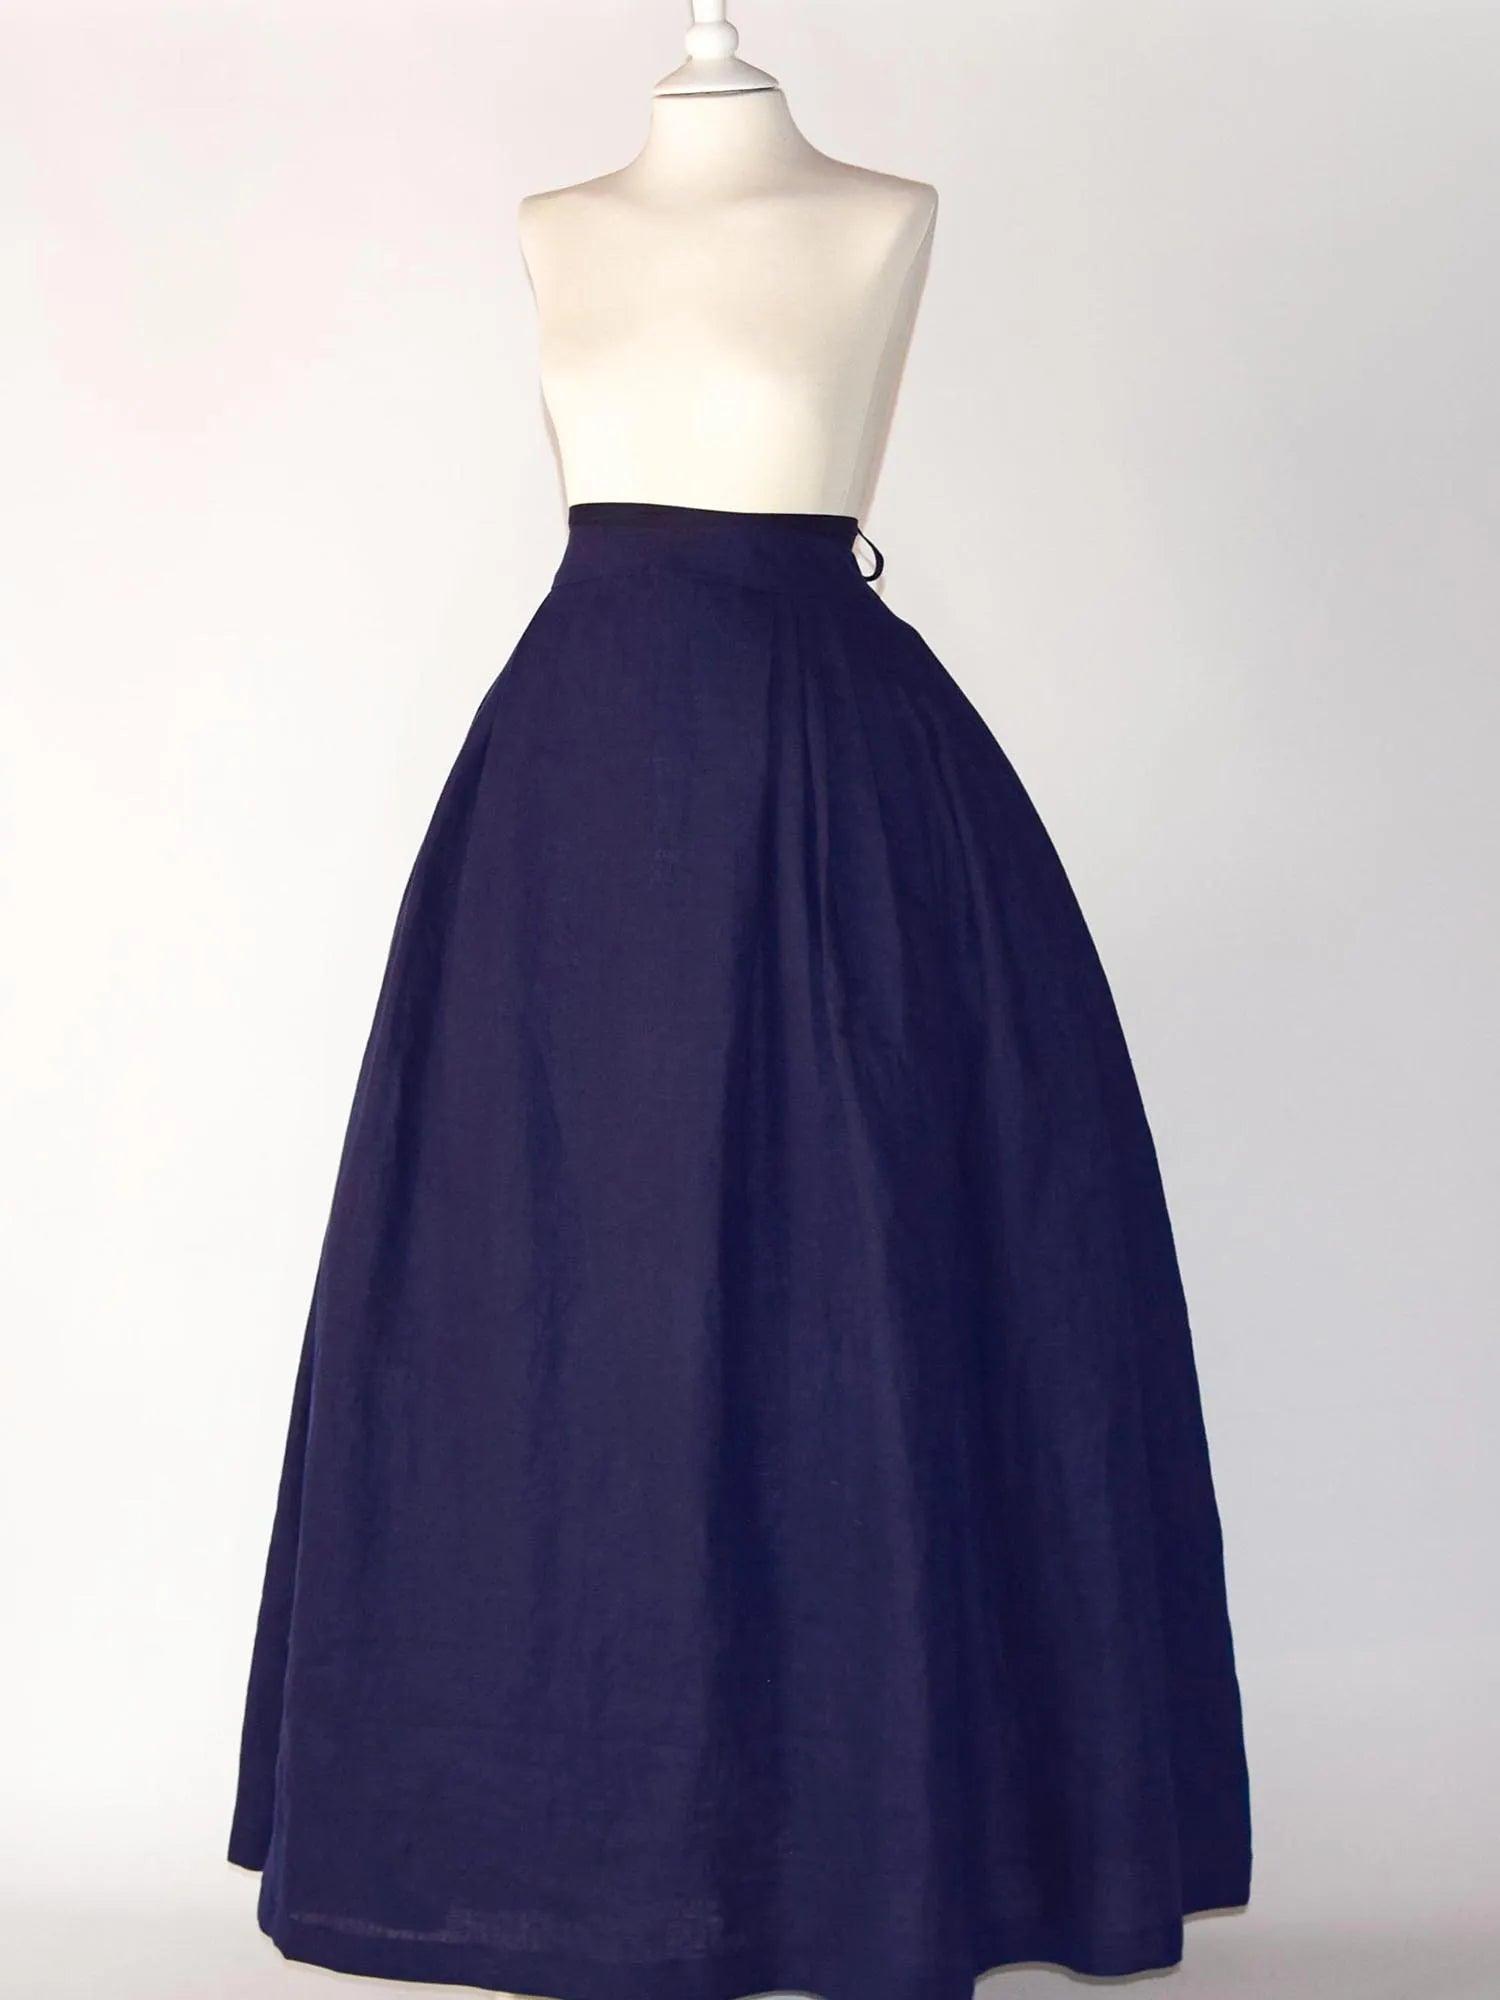 HELOISE, Historical Skirt in Night Blue Linen - Atelier Serraspina